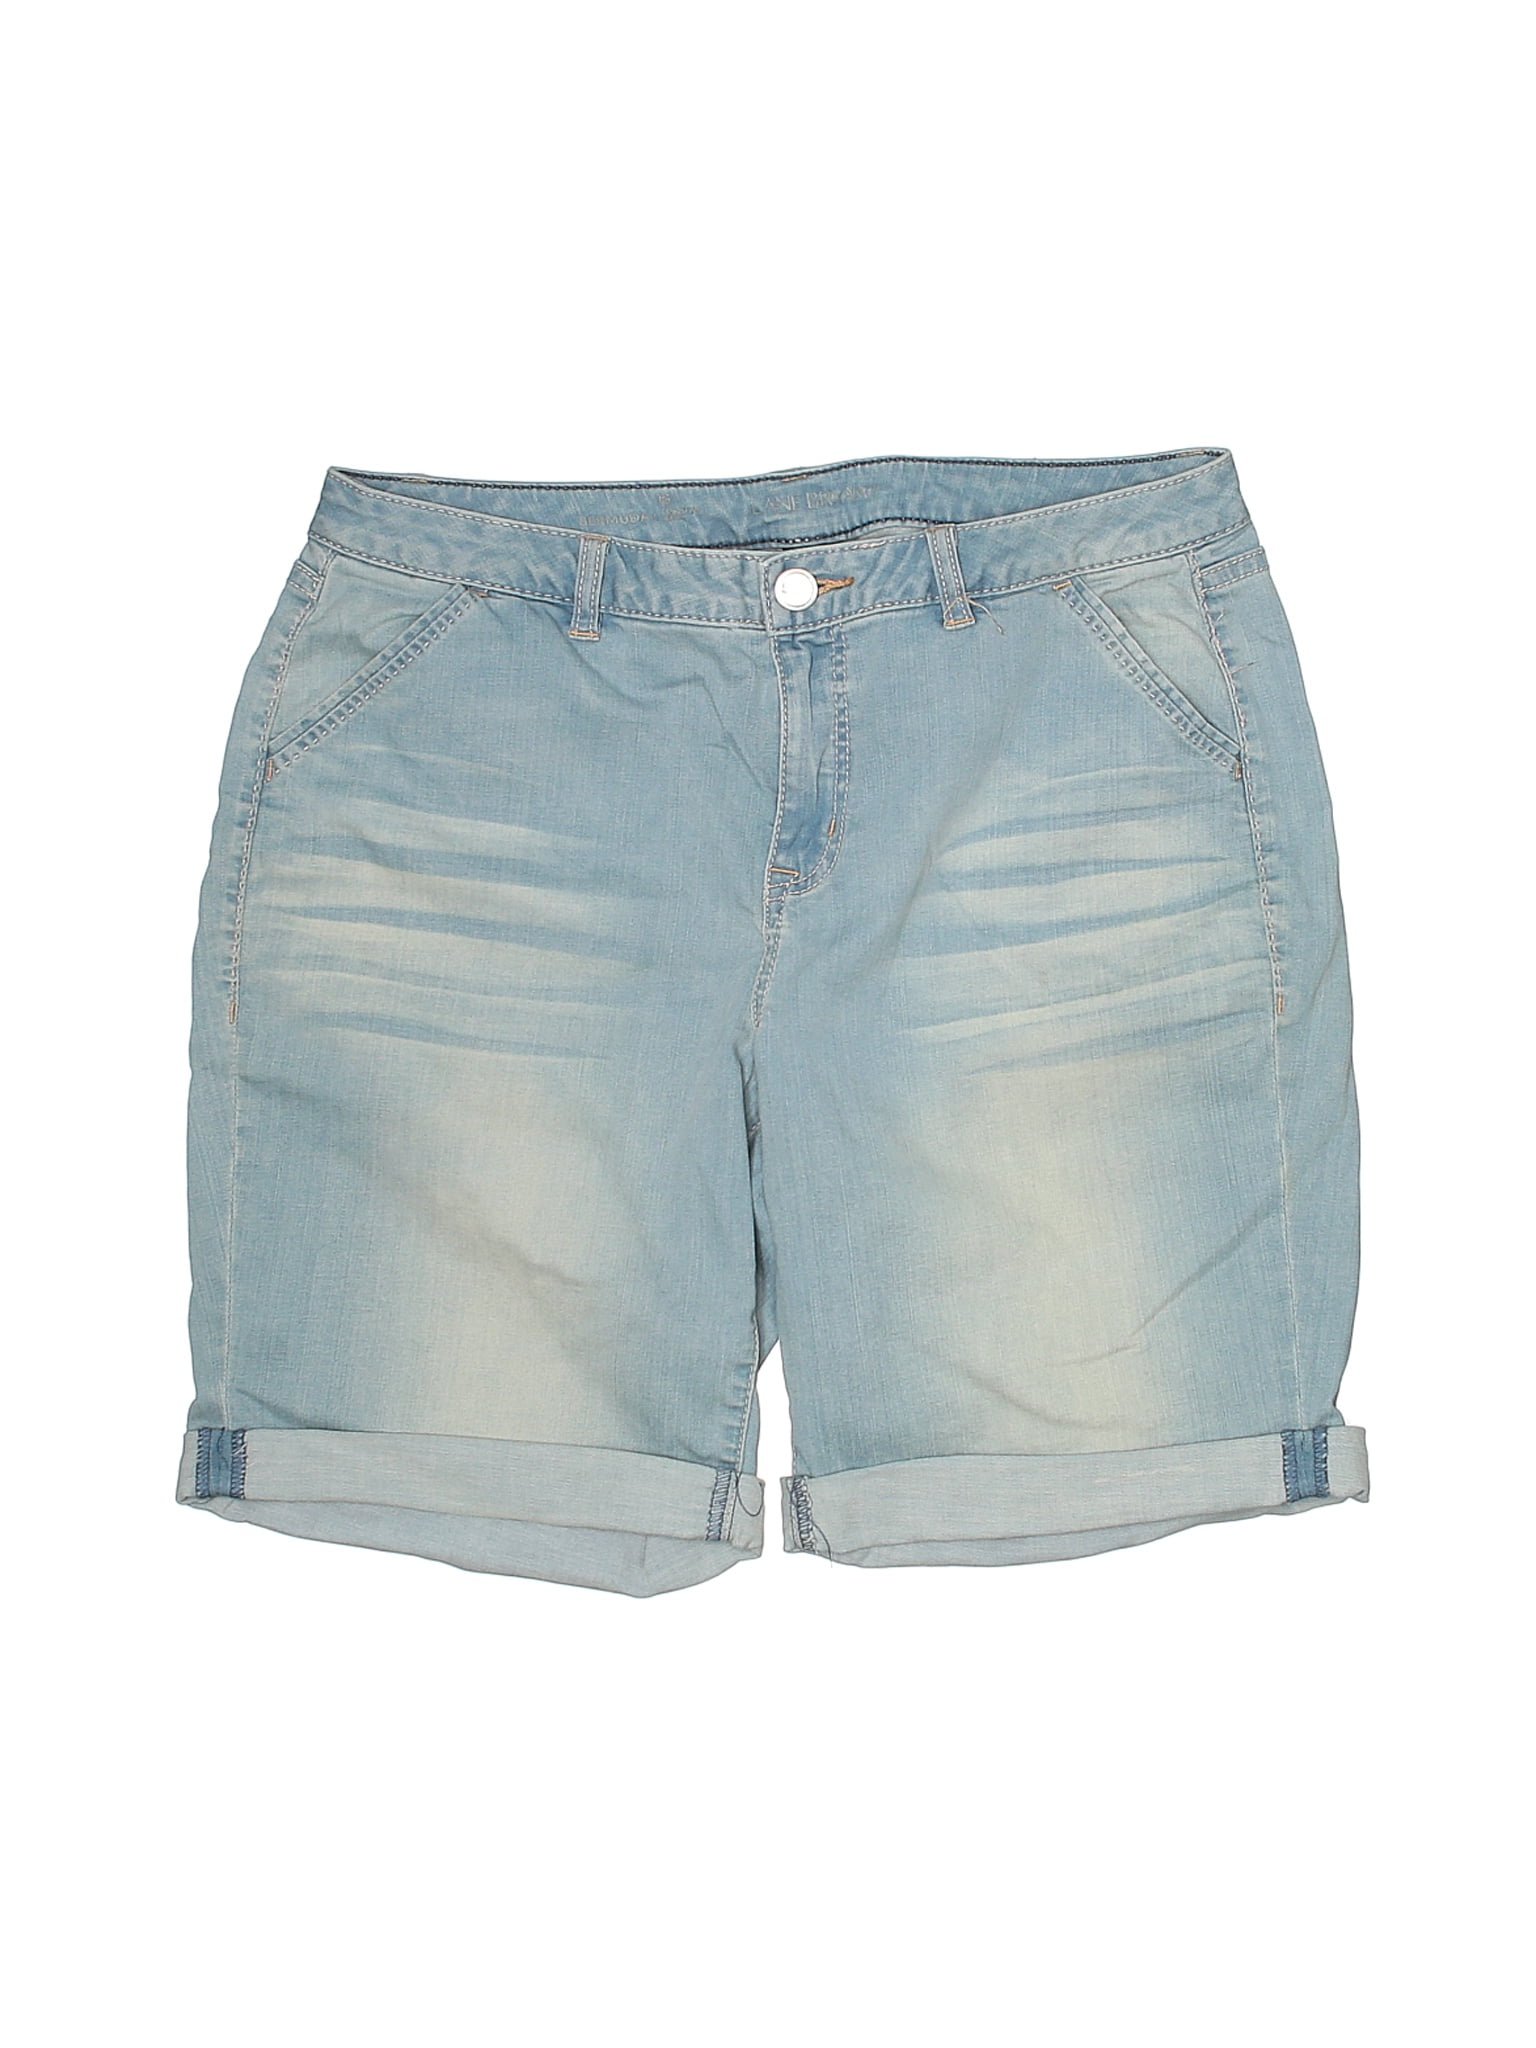 lane bryant jean shorts